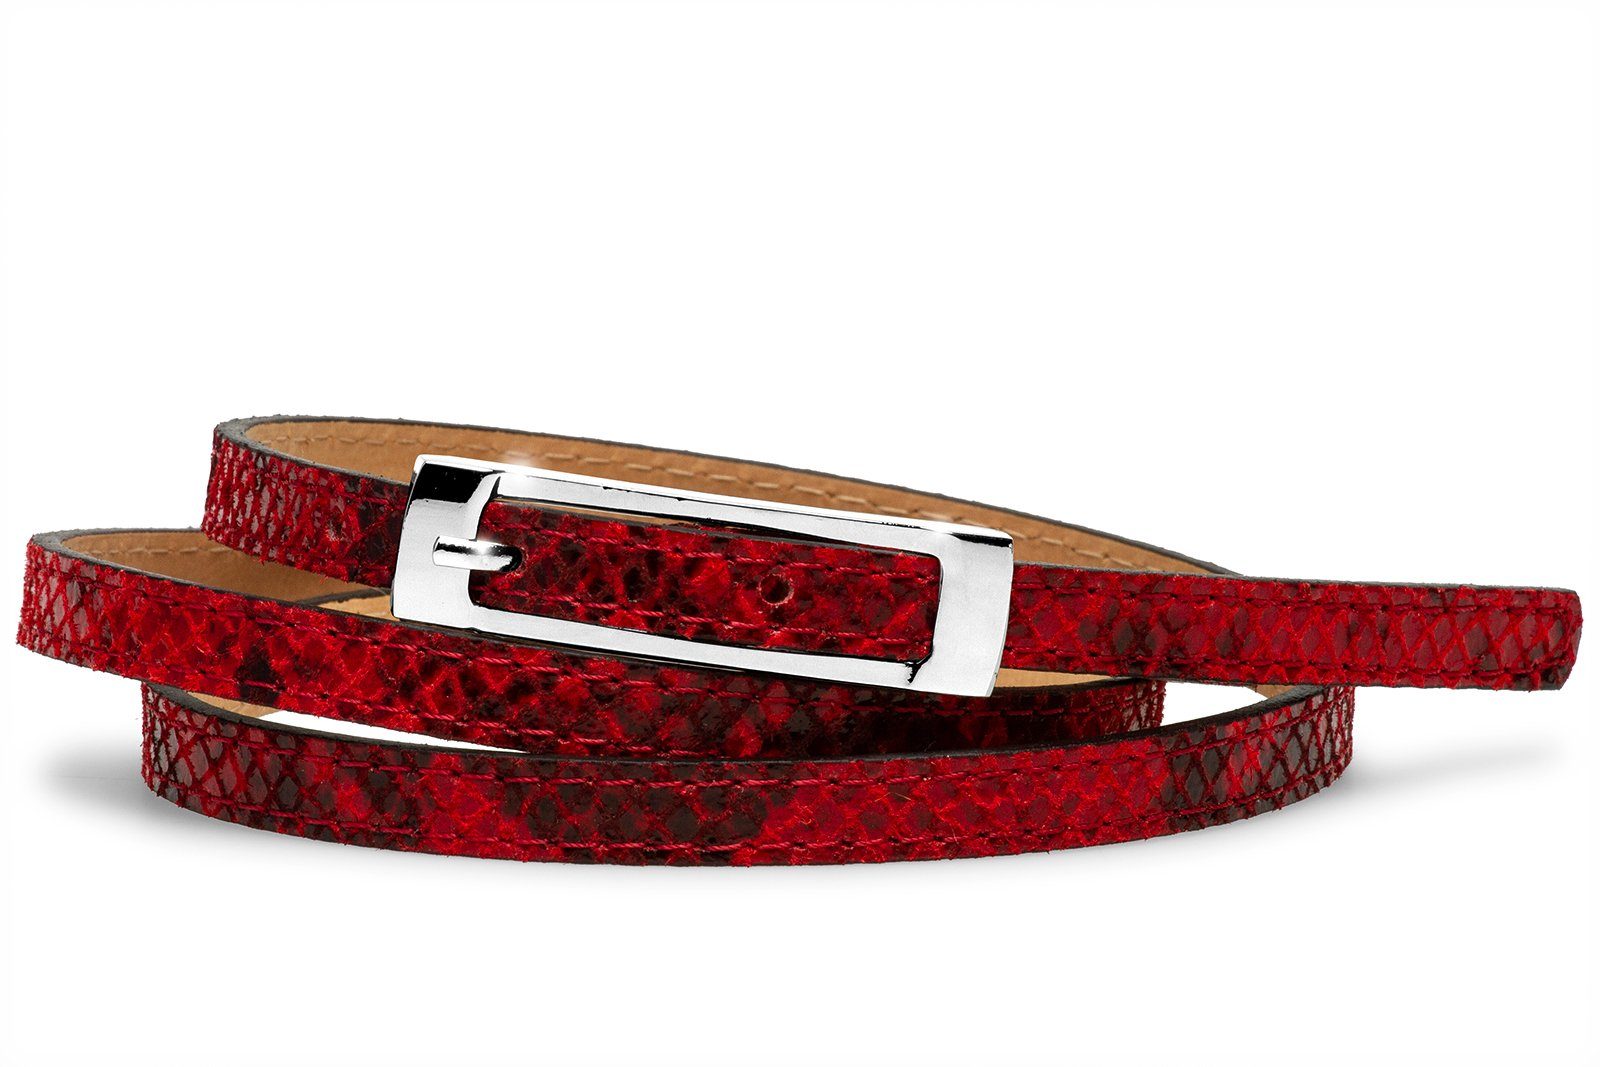 GU319 Caspar Ledergürtel mit Damen Taillengürtel schmaler Schlangen Print rot eleganter